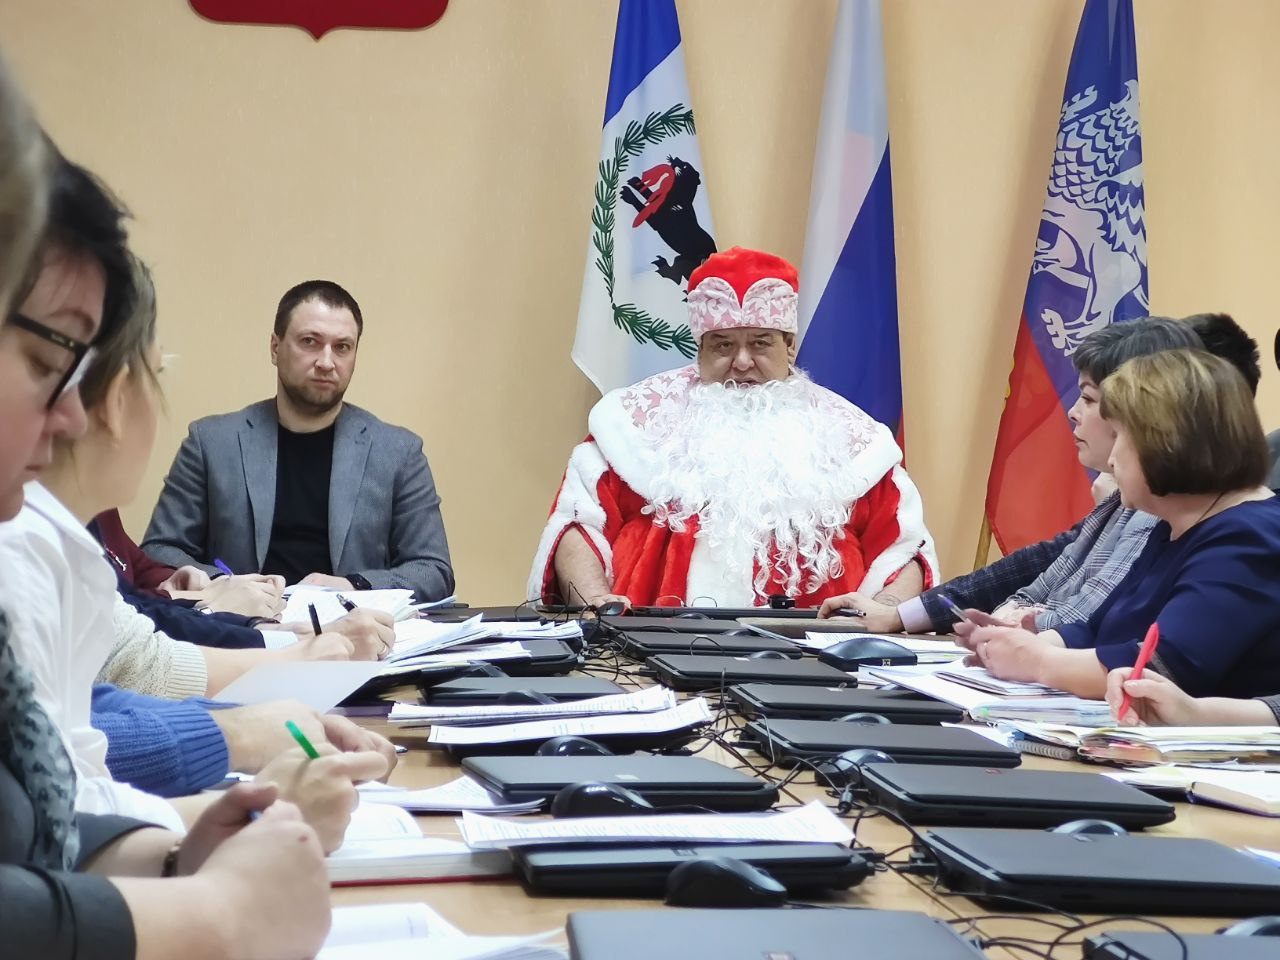 Олег Боровский провел предновогоднюю планерку в костюме Деда Мороза